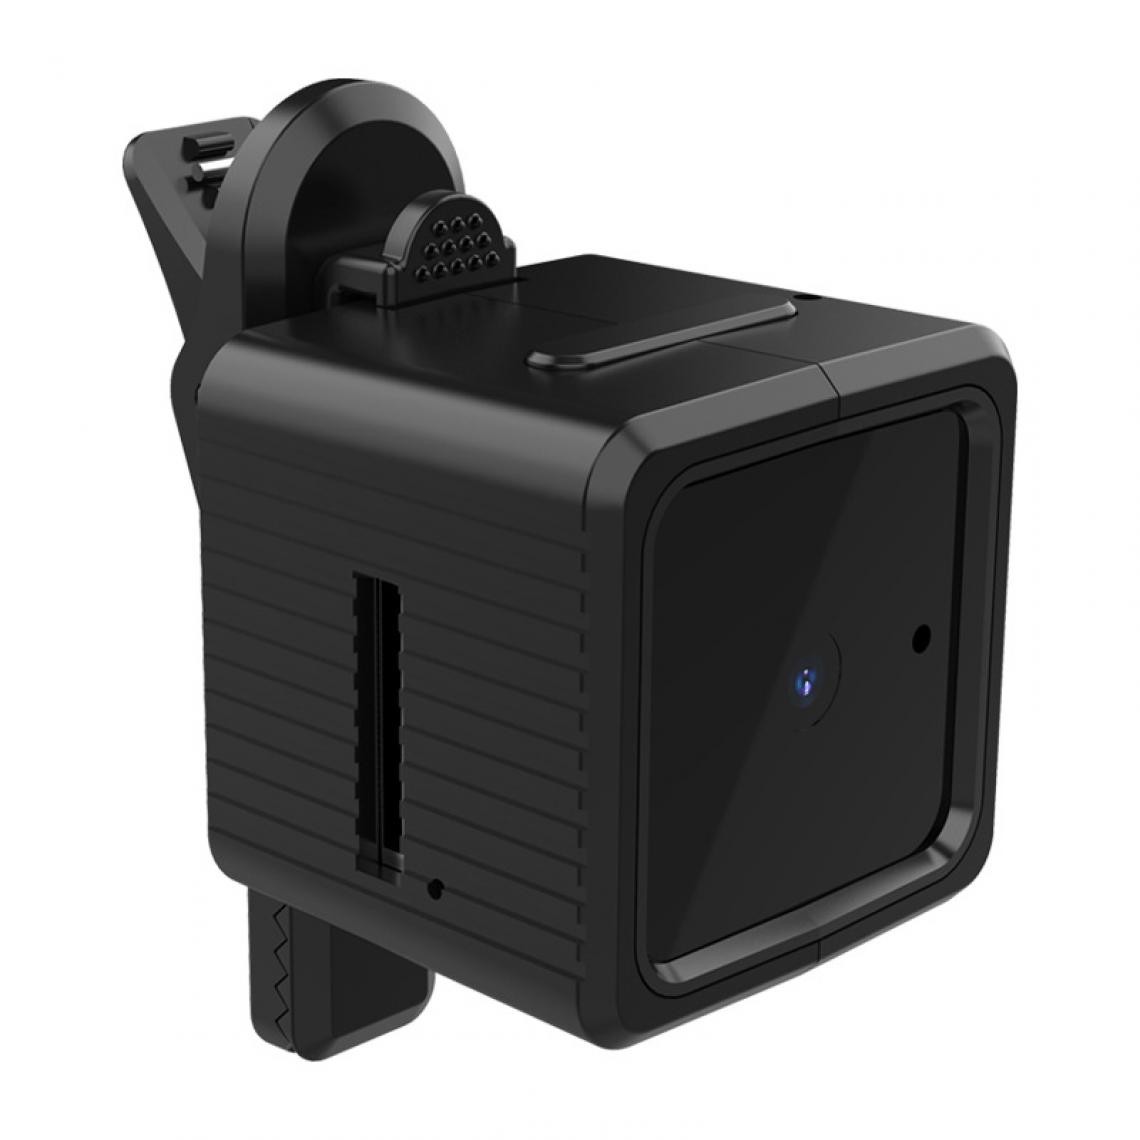 Generic - Caméra Web sans fil WiFi pour ordinateur Diffusion en direct Vision nocturne Caméra vidéo Hd 1080p - Webcam